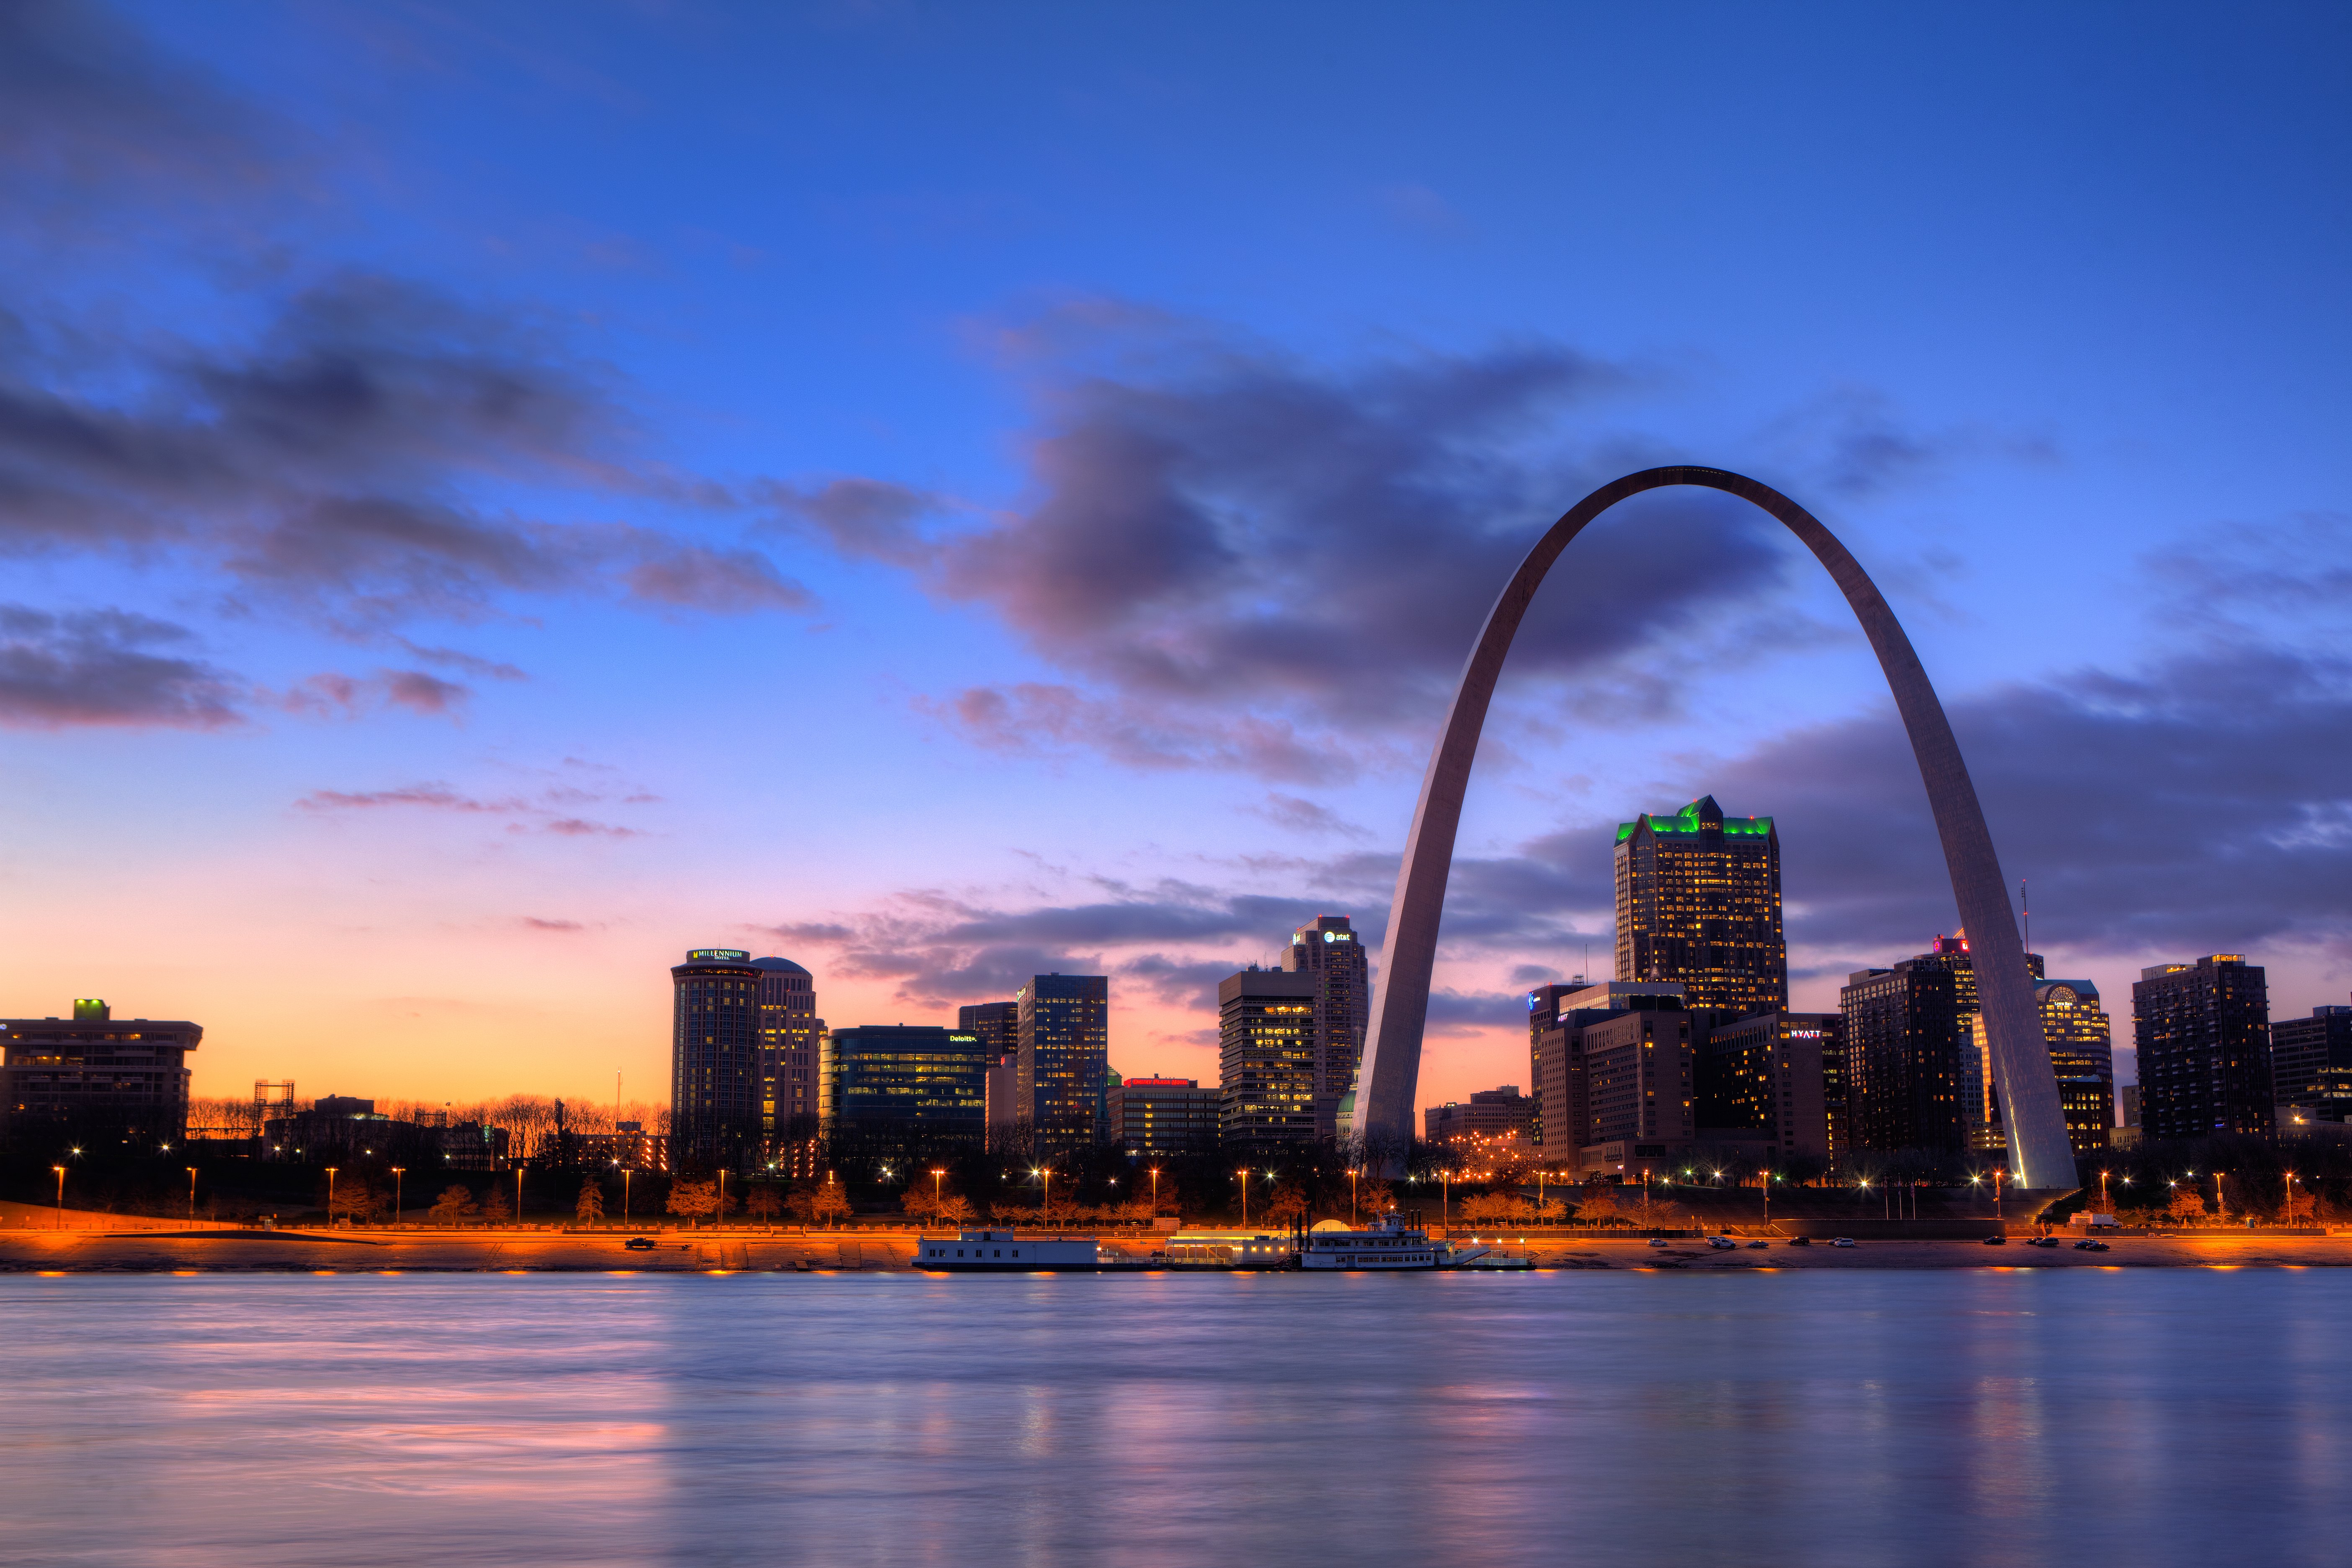 St. Louis Educational Student Travel | Educational Tours & Graduation Trips